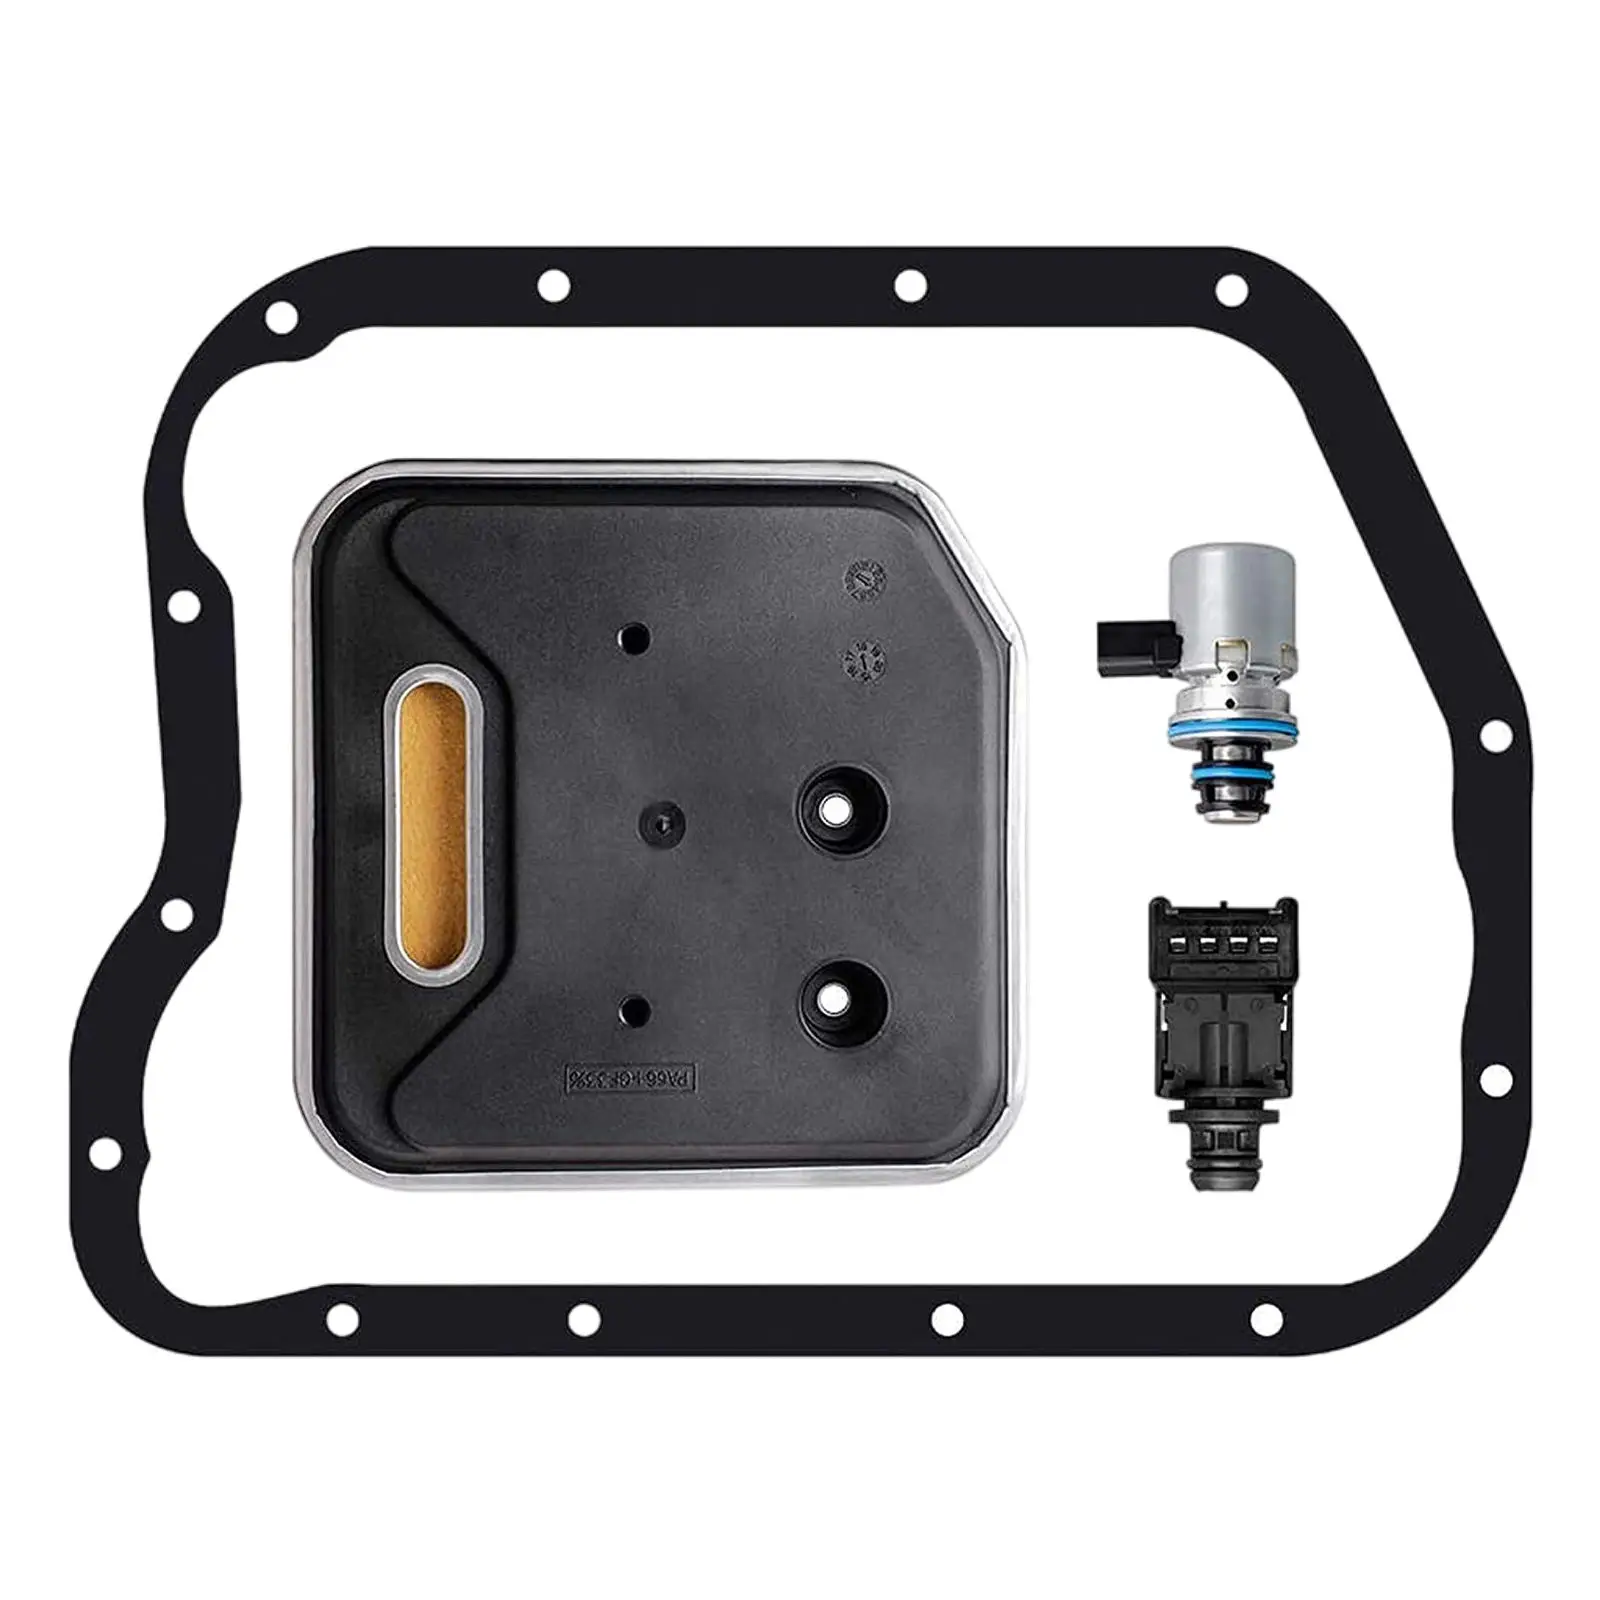 A500 46RE A518 Transmission Governor Pressure Sensor & Solenoid Filter Gasket Kit for Chrysler